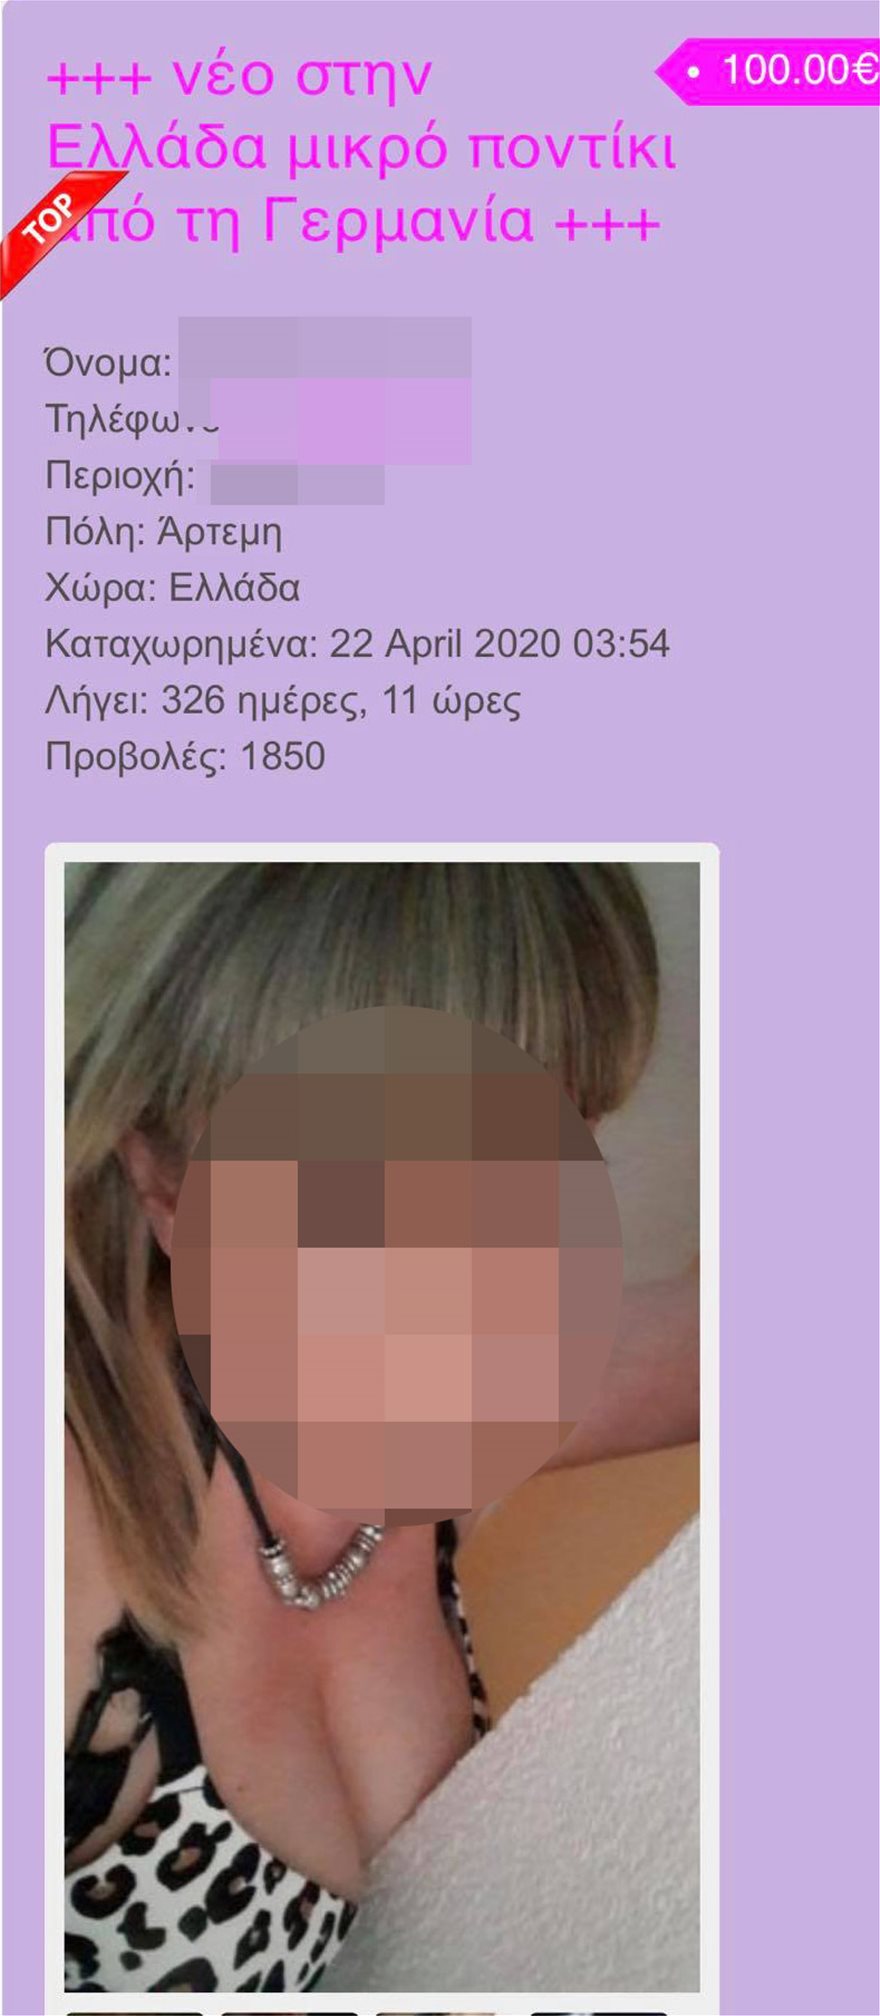 Αχαρνών: Αυτό είναι το διαδικτυακό προφίλ της 42χρονης Γερμανίδας - Φωτογραφία 5